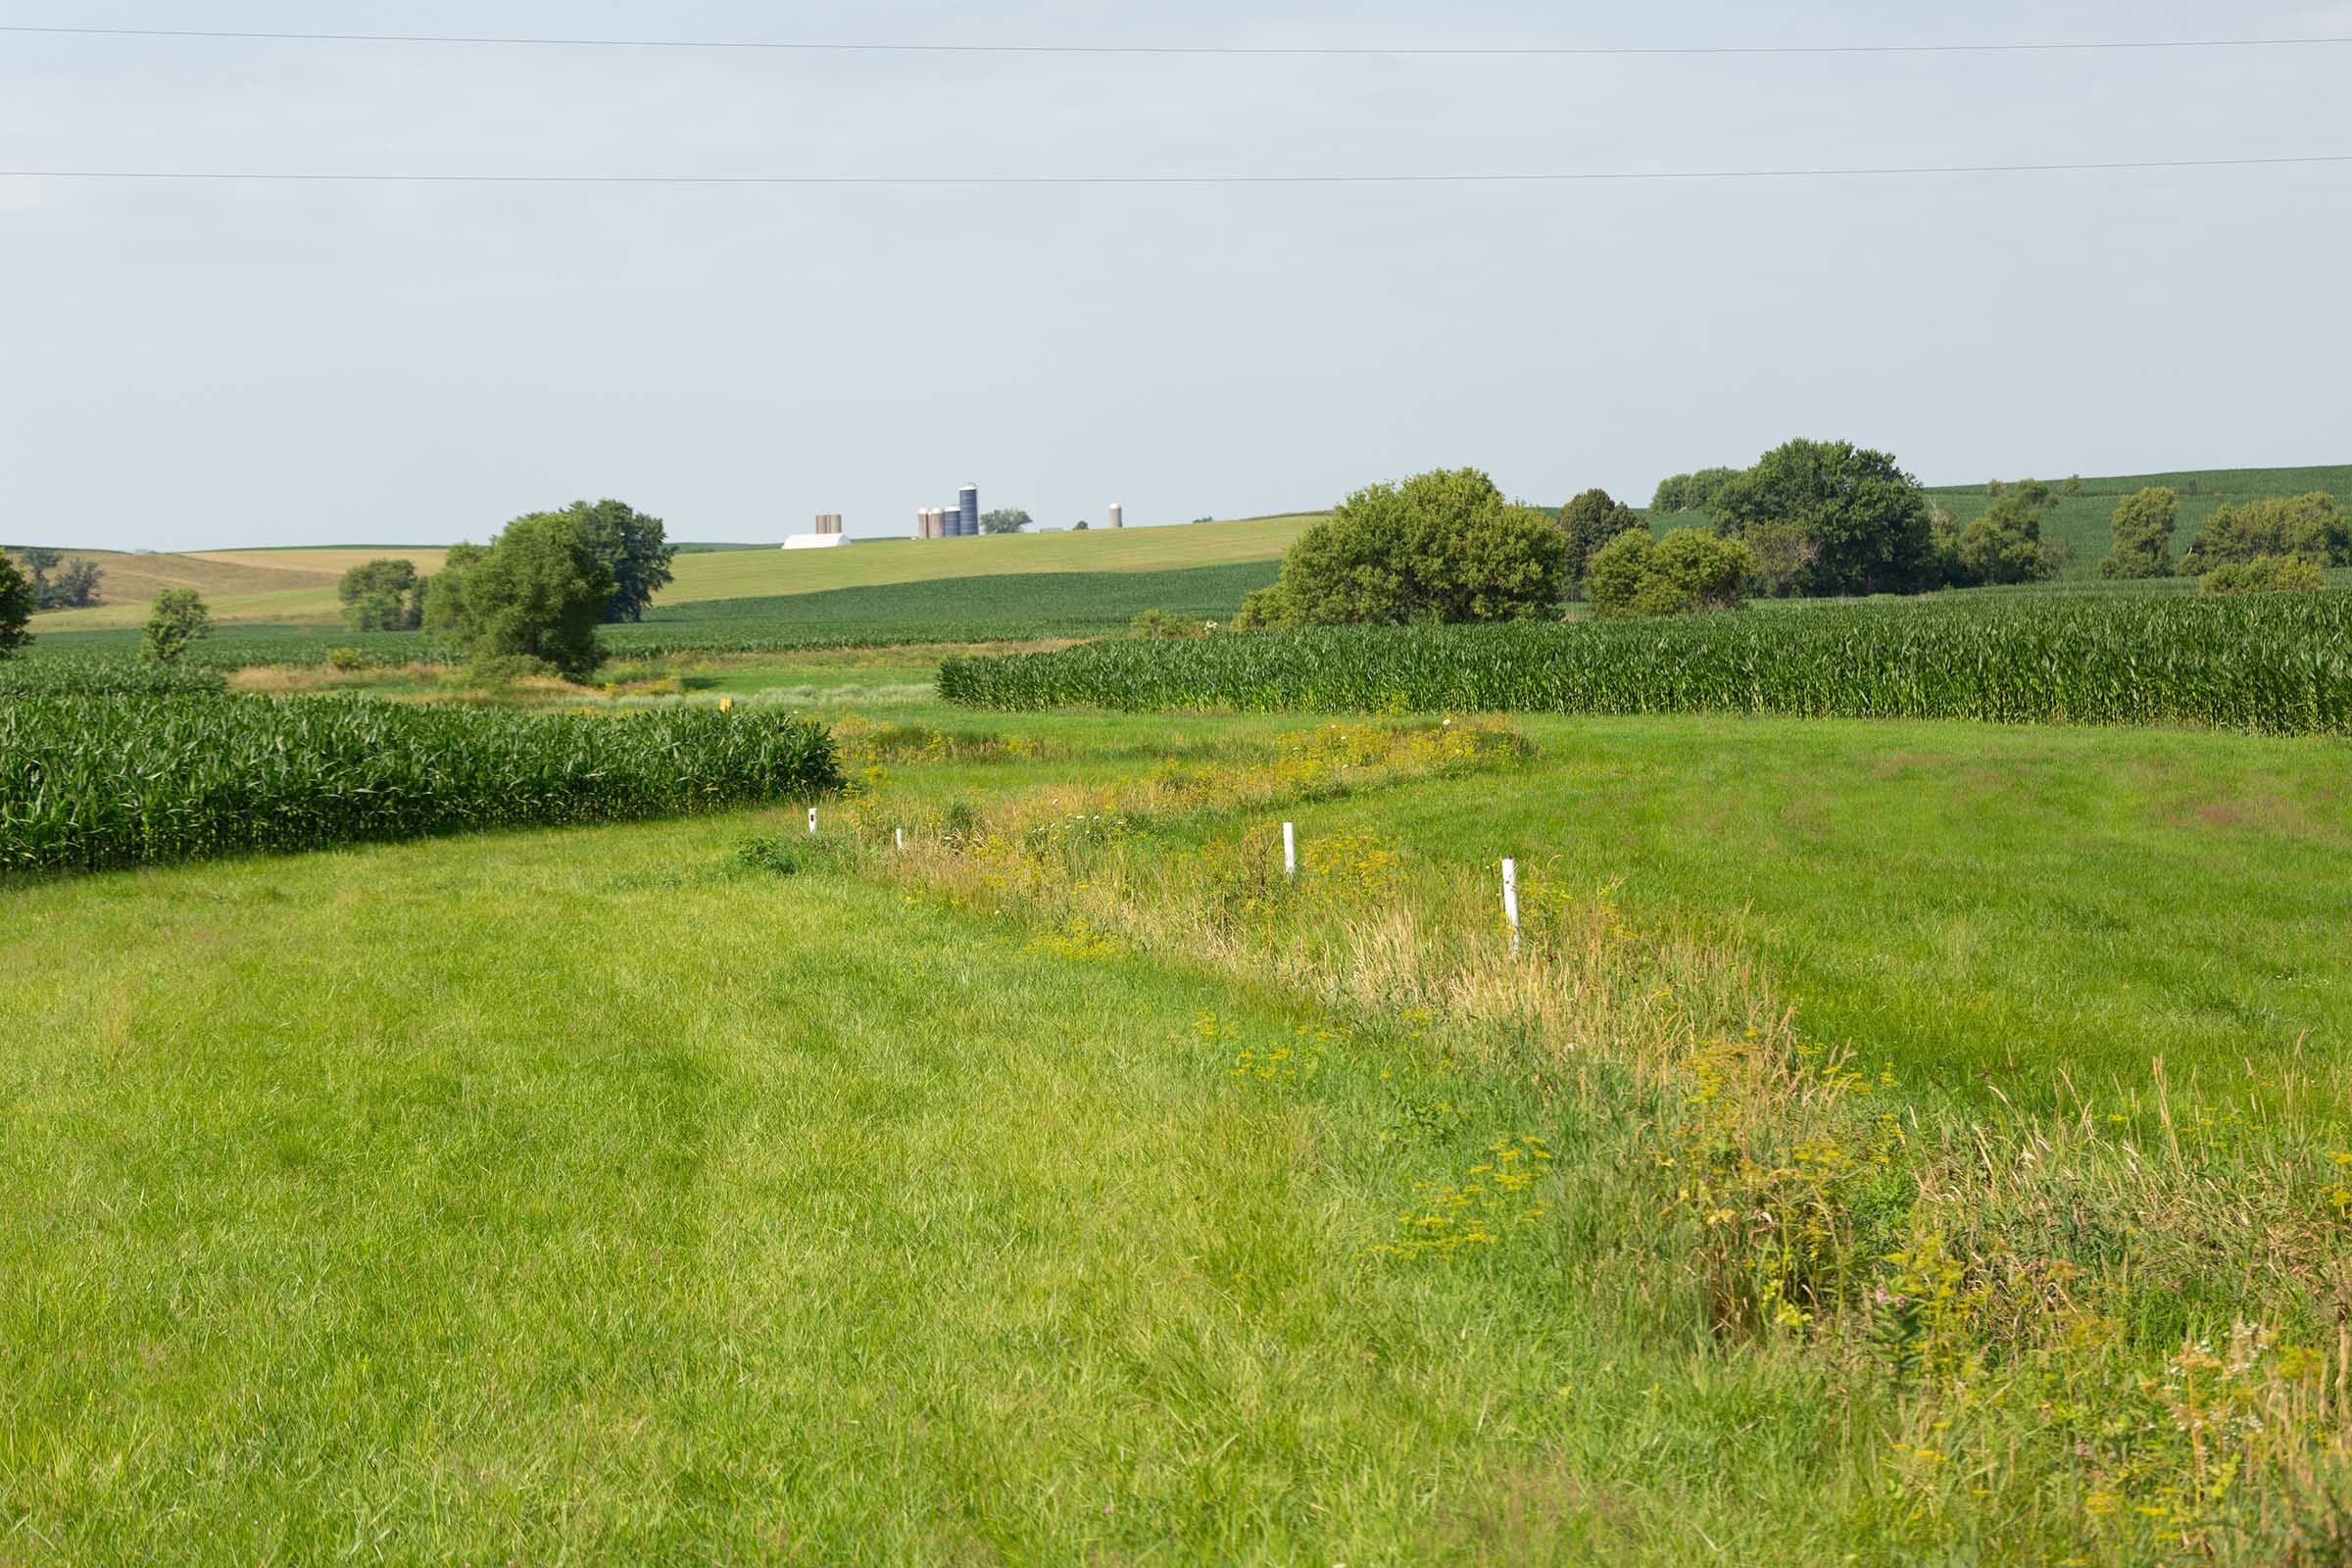 Waterway in Iowa field